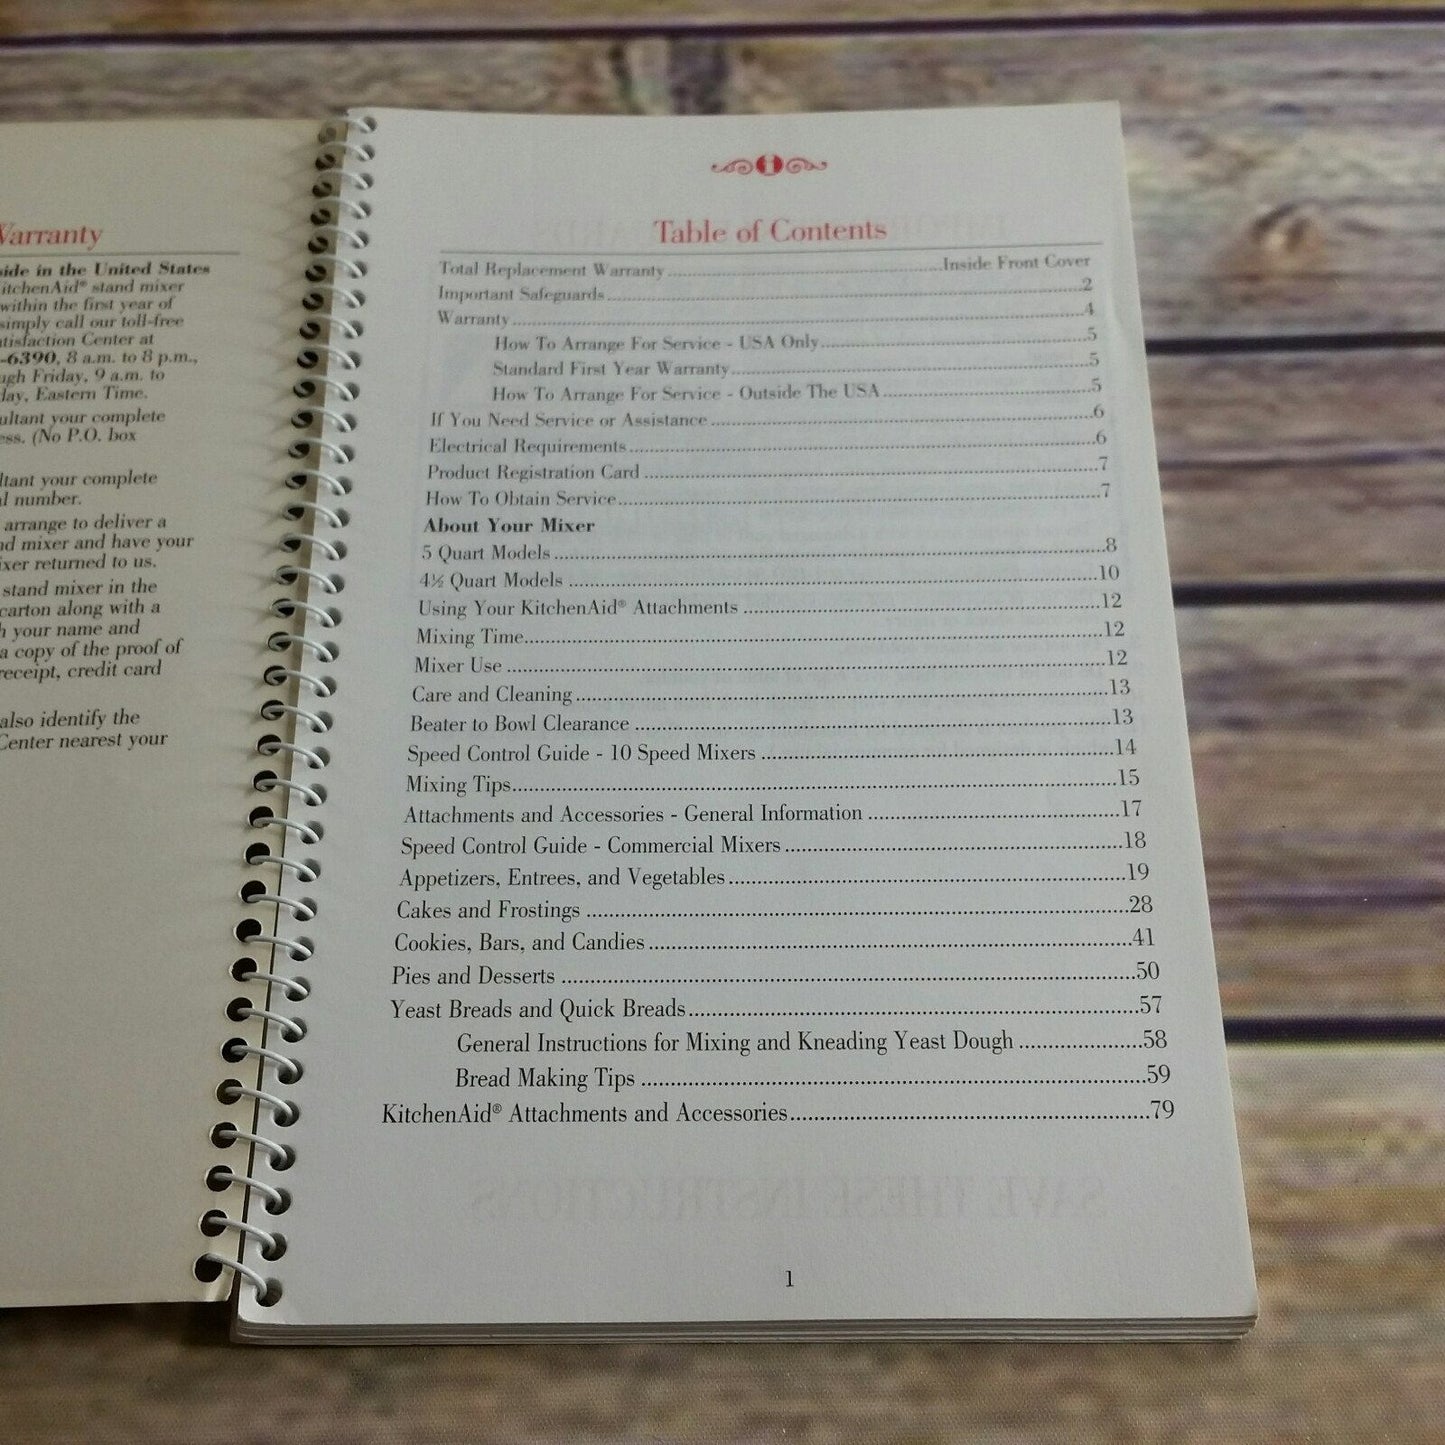 Kitchen Aid Stand Mixer Instructions and Recipes 9704323 KitchenAid 5 Qt 4.5 Qt Manual Cookbook